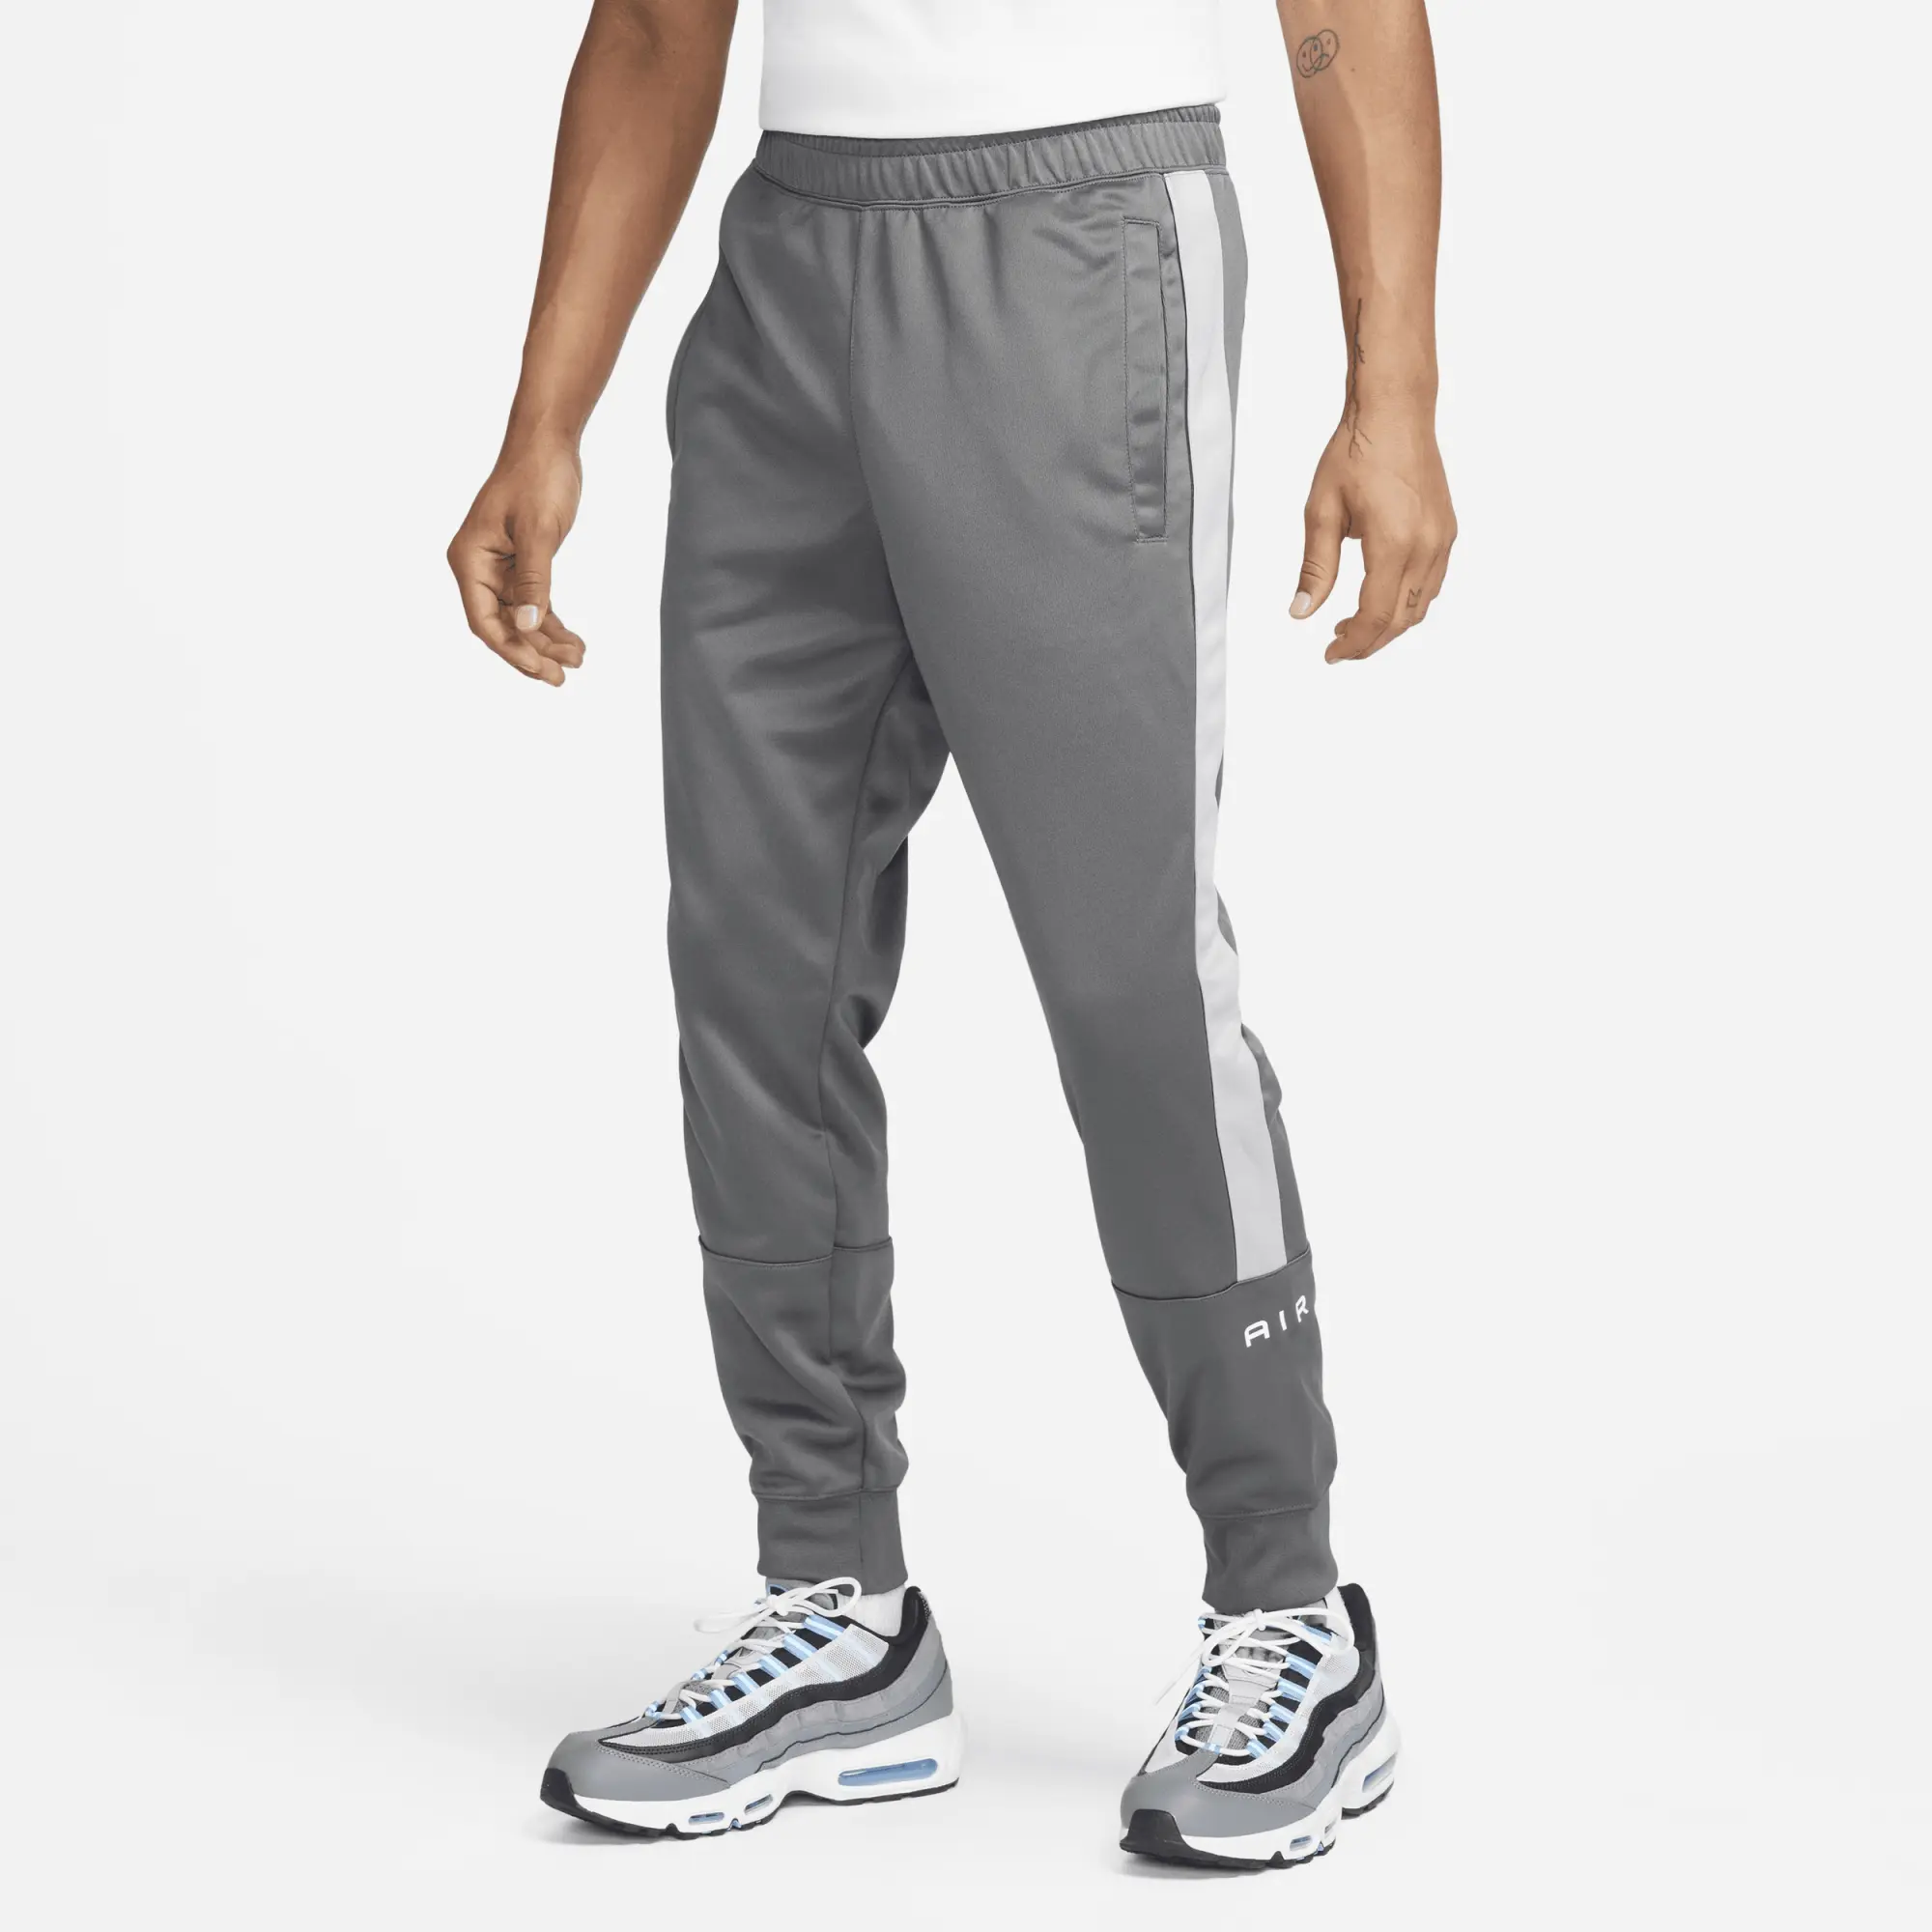 Nike Air Men's Joggers - Grey